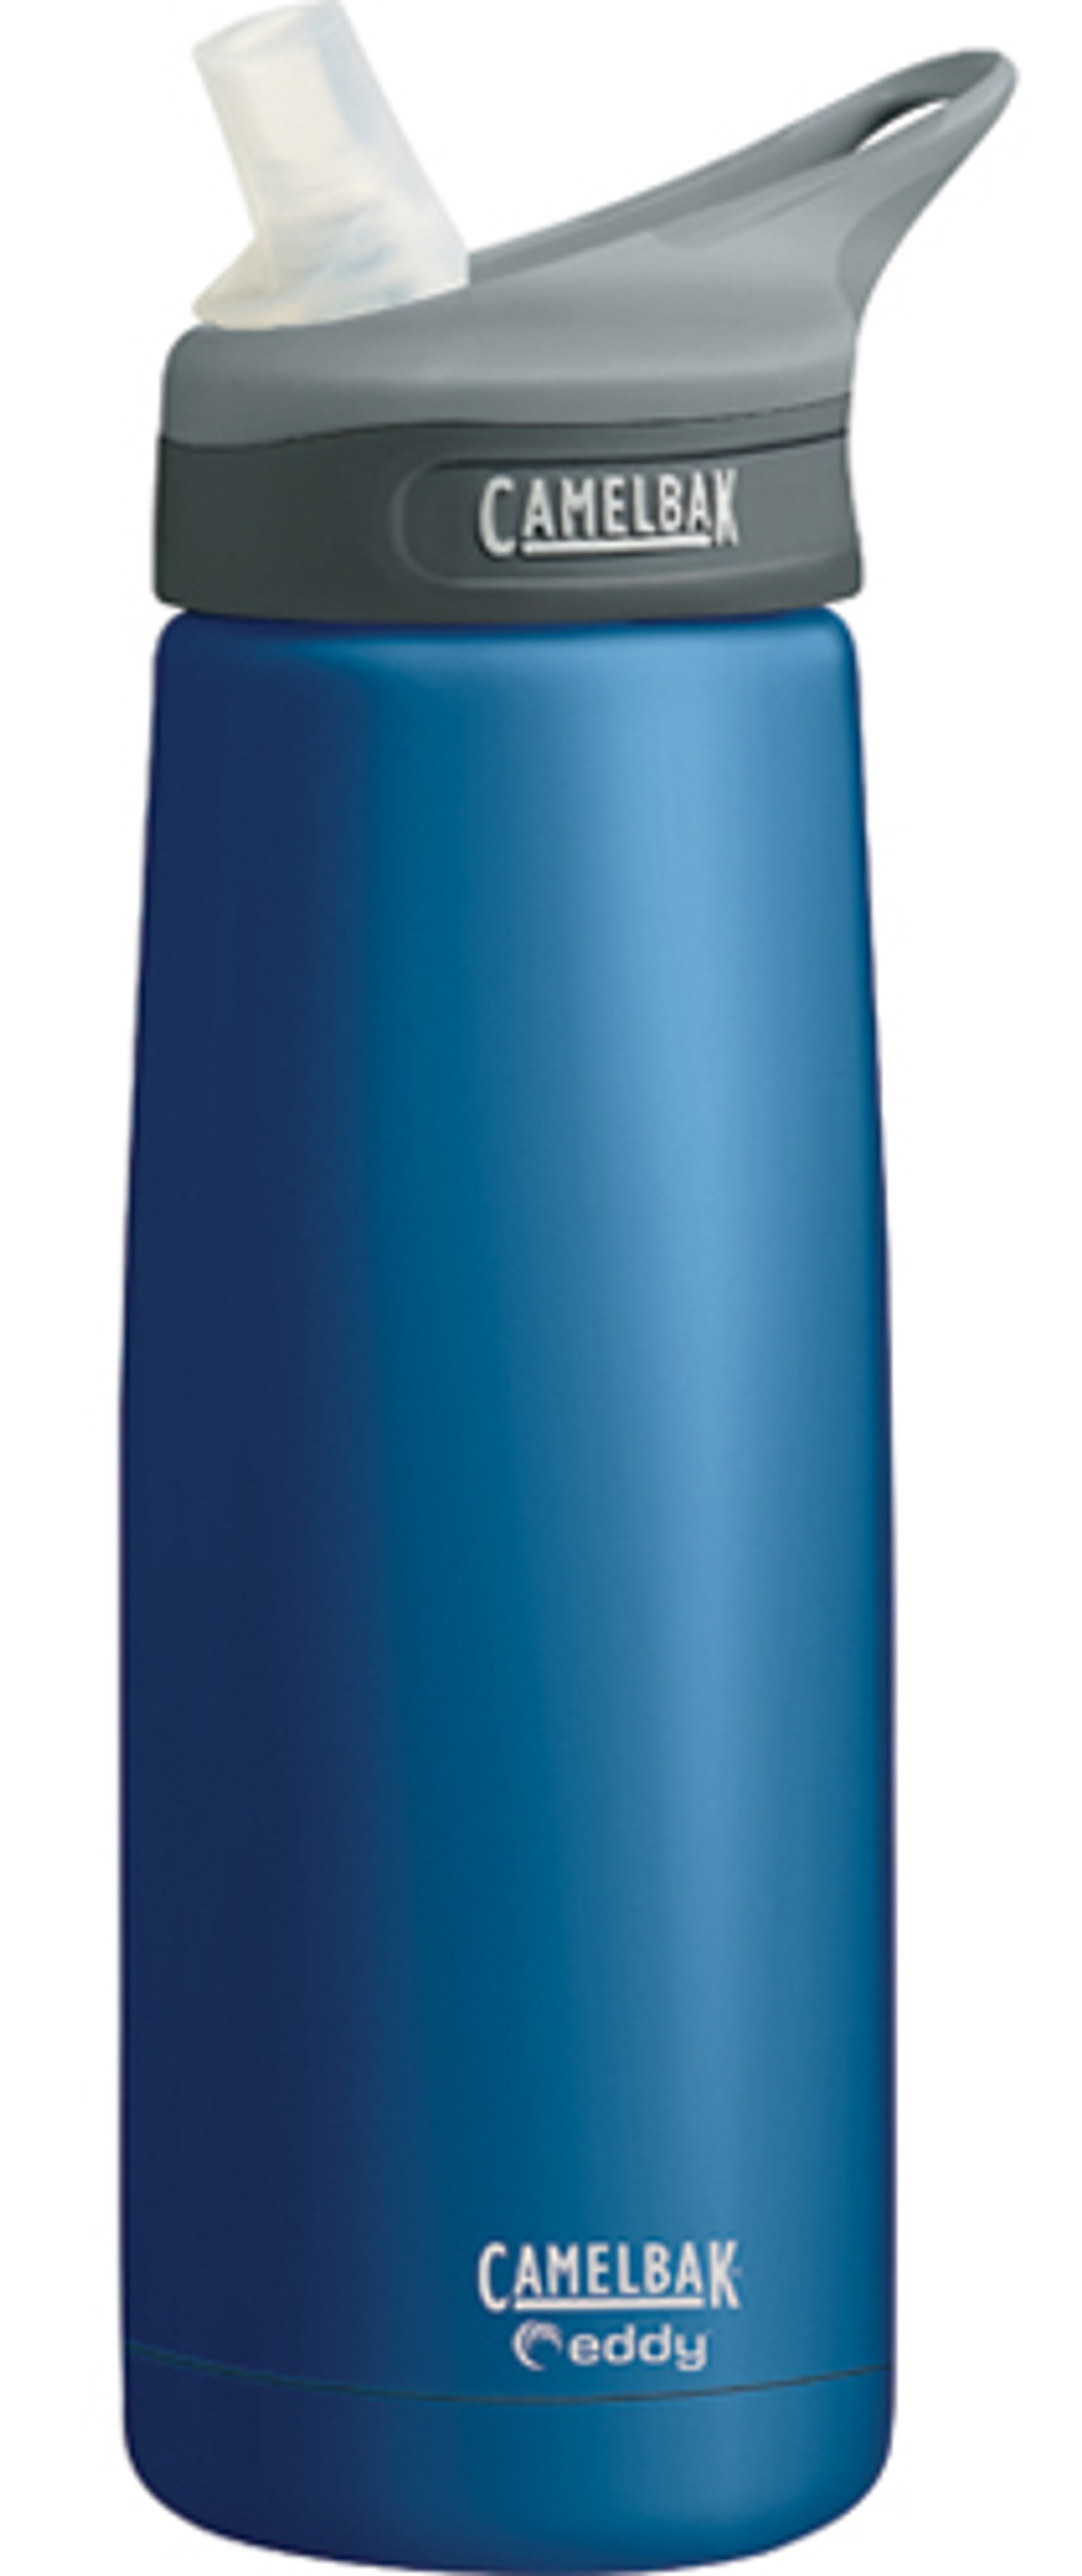 Camelbak eddy Stainless Insulated Bottle 500ml - Navy